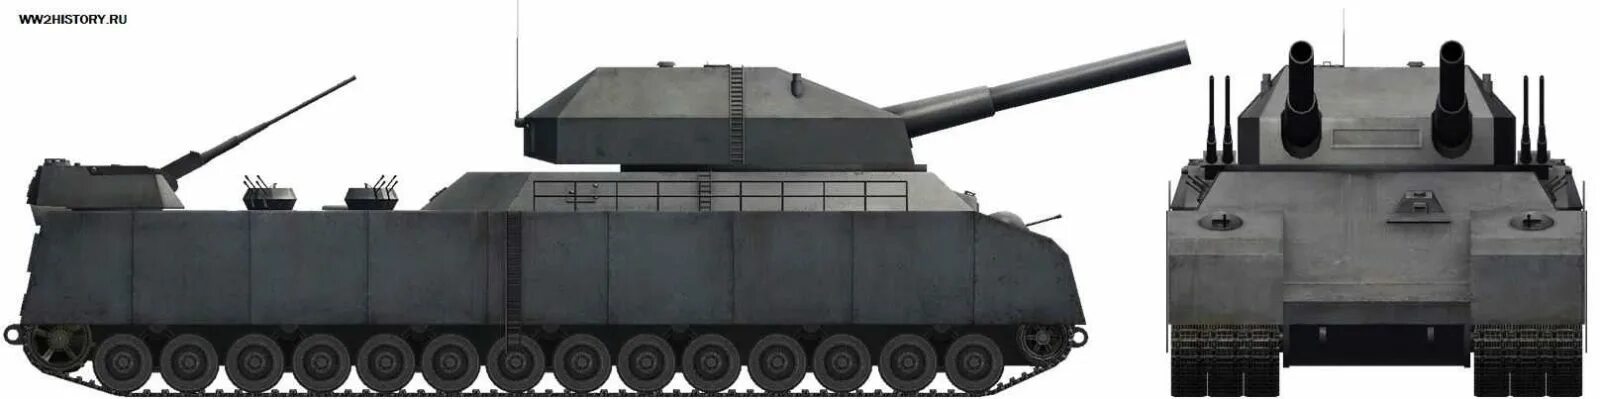 Большой немецкий танк. Танк p1000 Ratte. Немецкий сверхтяжелый танк крыса. Танк Landkreuzer p1000 Ratte. Танк РАТТЕ П 1000.